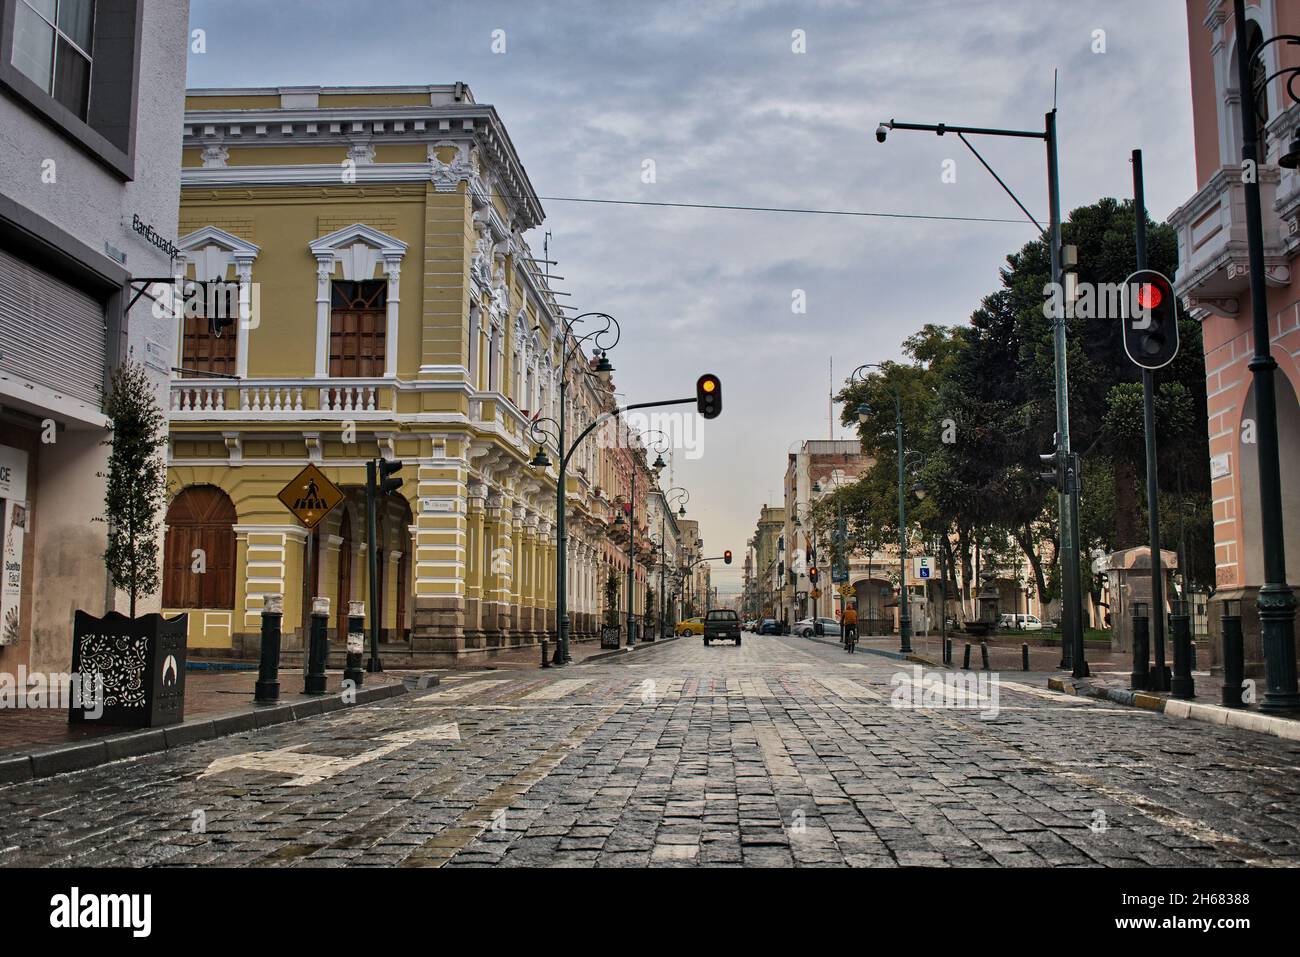 Centro histórico de Riobamba, ciudad antigua en la cordillera de los andes de ecuador, calles coloniales Stock Photo